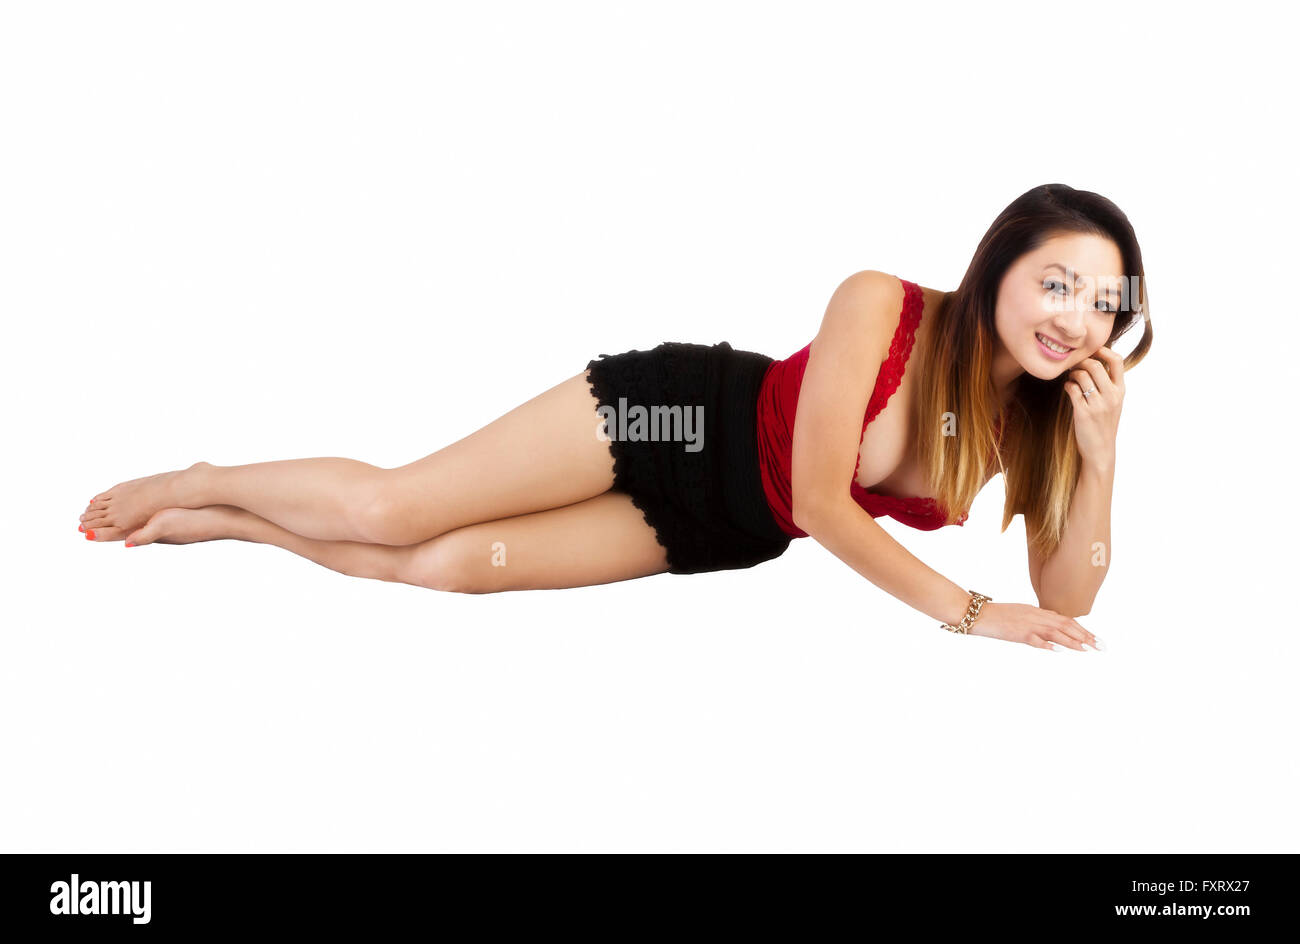 Asian American Woman Red Top décolleté Smiling Banque D'Images